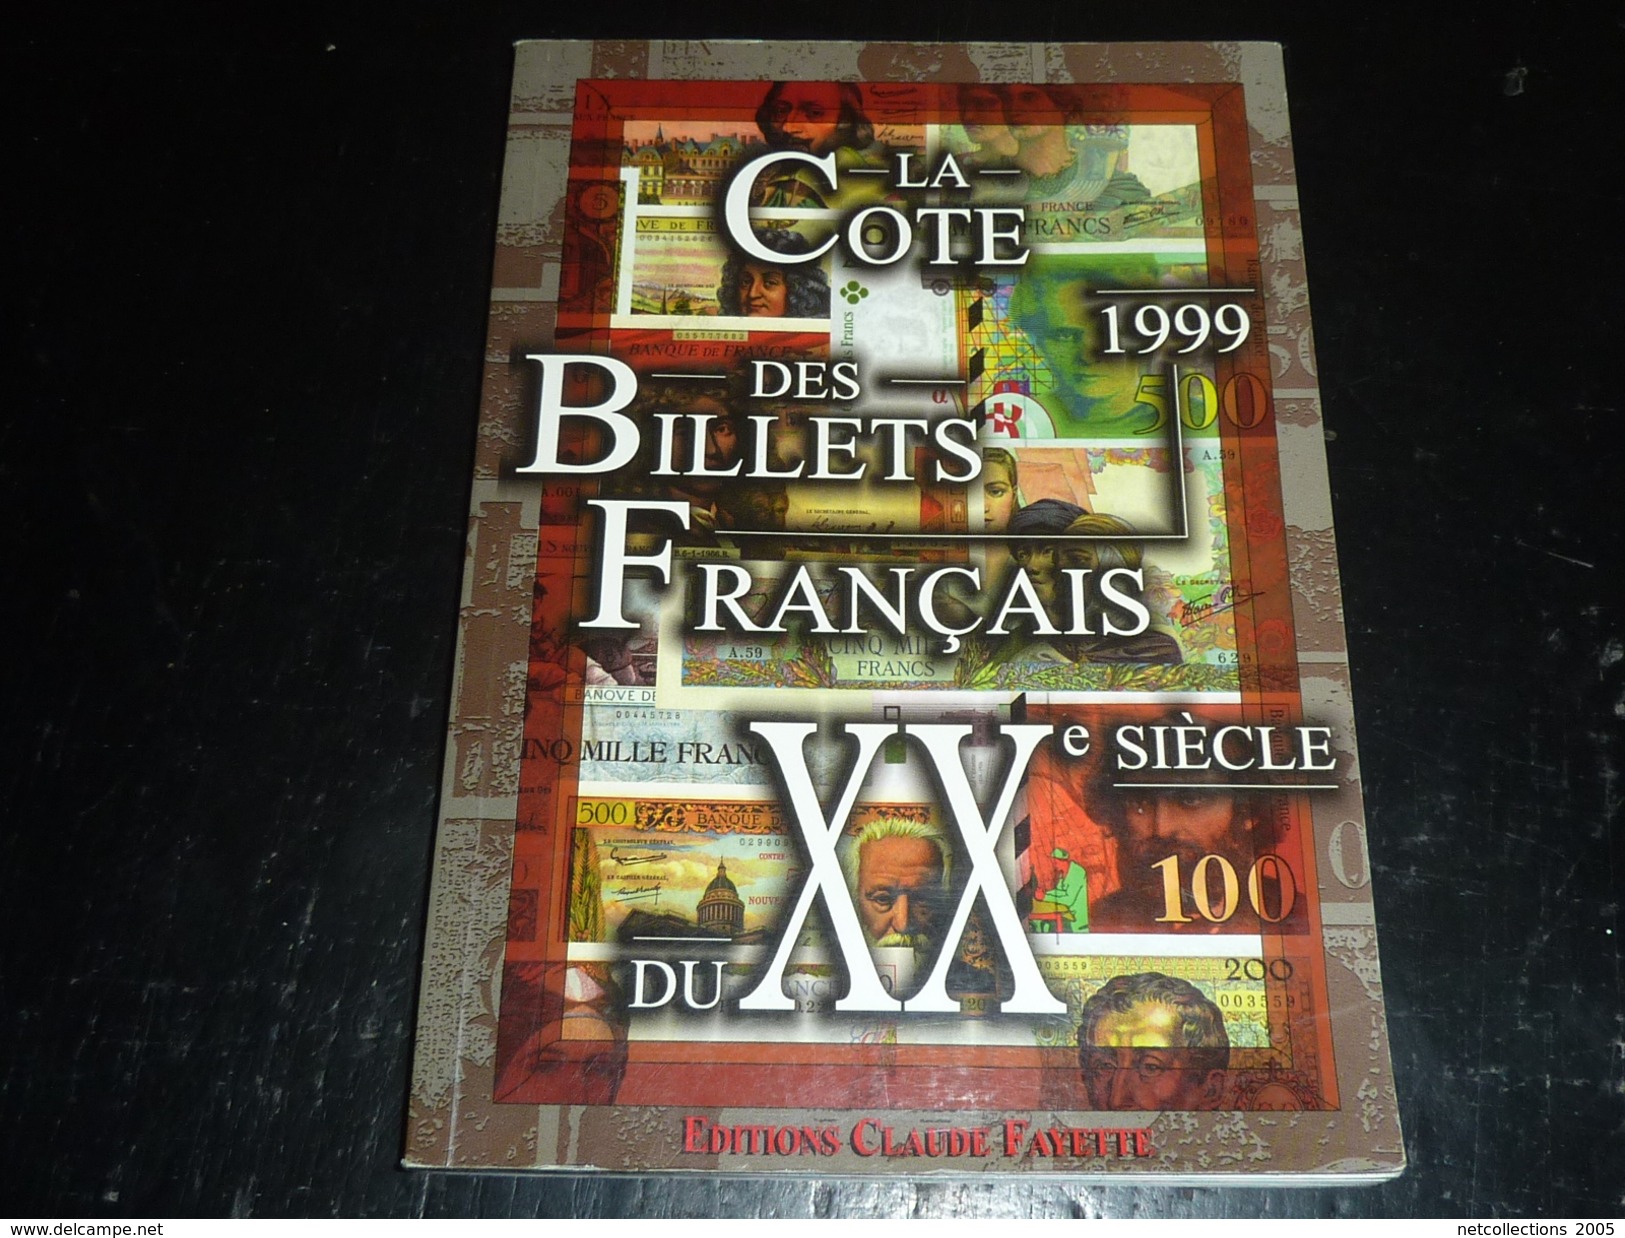 LA COTE DES BILLETS FRANCAIS DU XX° Siècle 1999 - EDITION CLAUDE FAYETTE - TOUT EN COULEUR COTE EN FRANC - Frans